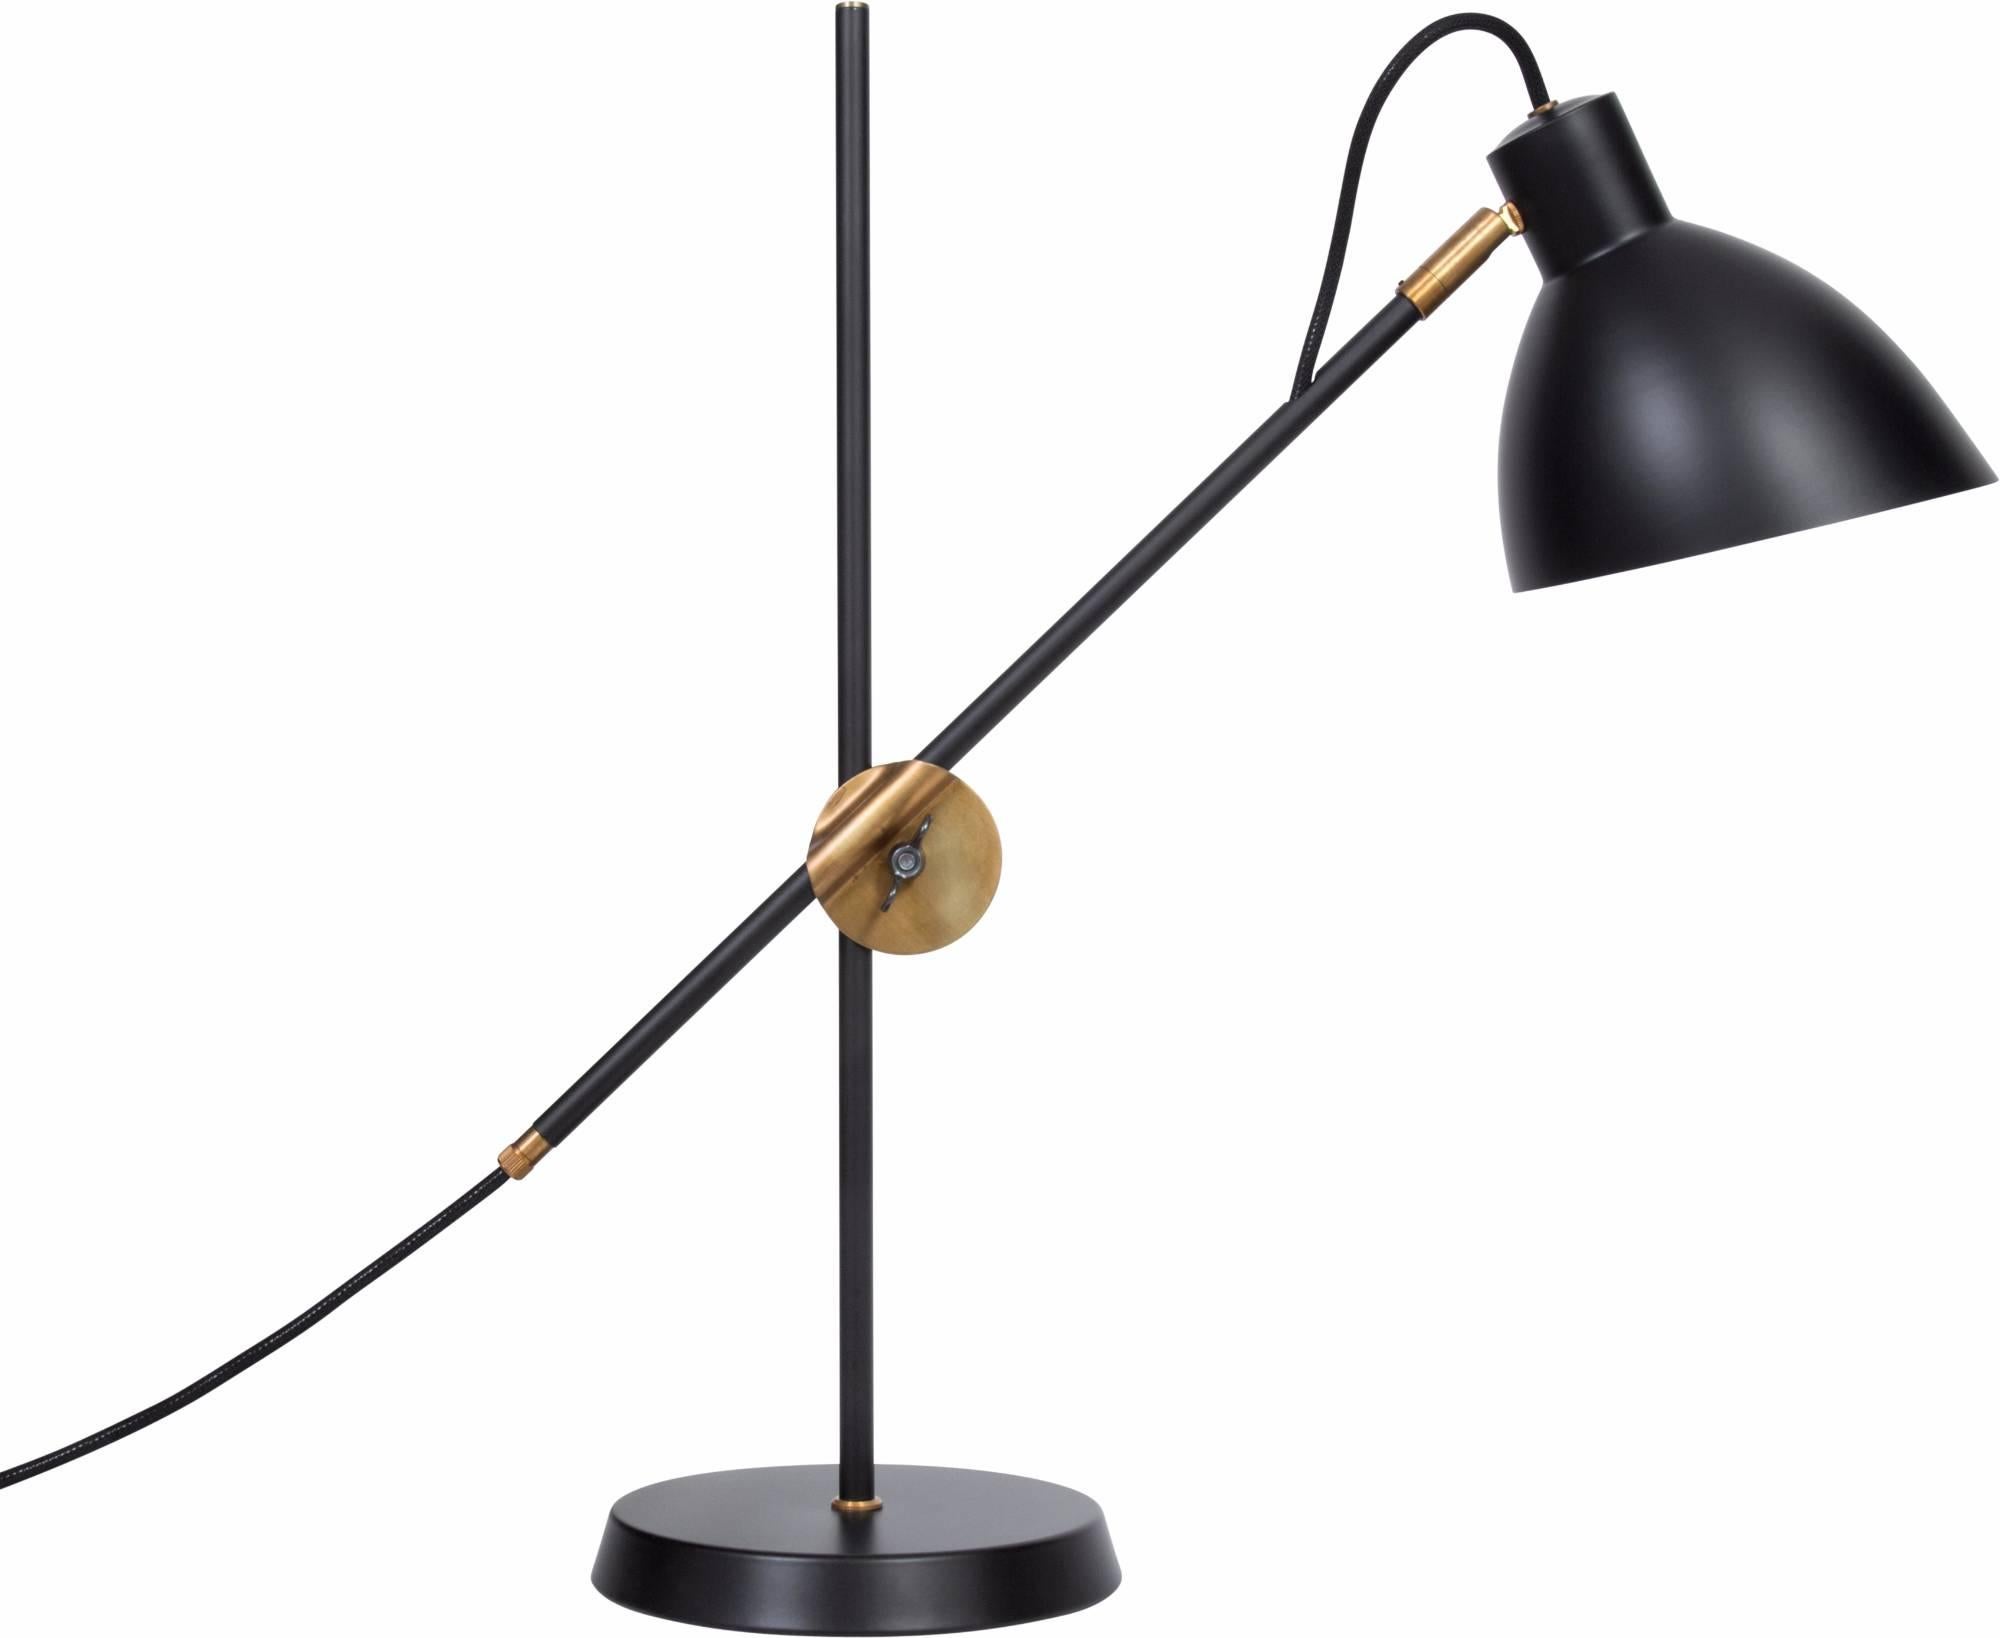 Lampe de table modèle KH#1 conçue par Konsthantverk en 1926 et fabriquée par eux-mêmes.

La production des lampes, des appliques et des lampadaires est réalisée de manière artisanale avec les mêmes matériaux et techniques que les premiers